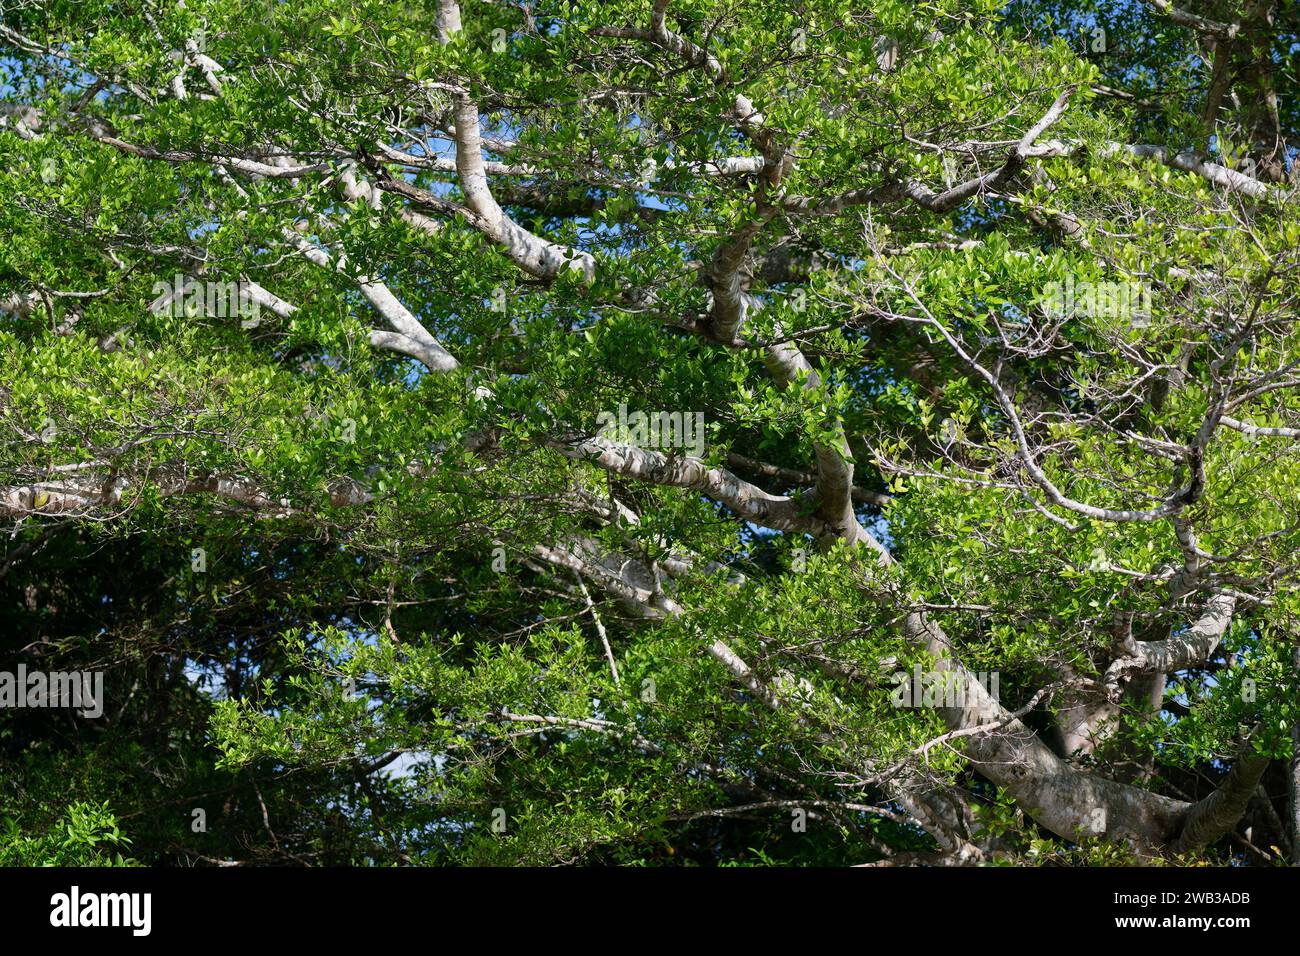 Figuier géant, Ficus, état d'Amazonas, Brésil Banque D'Images